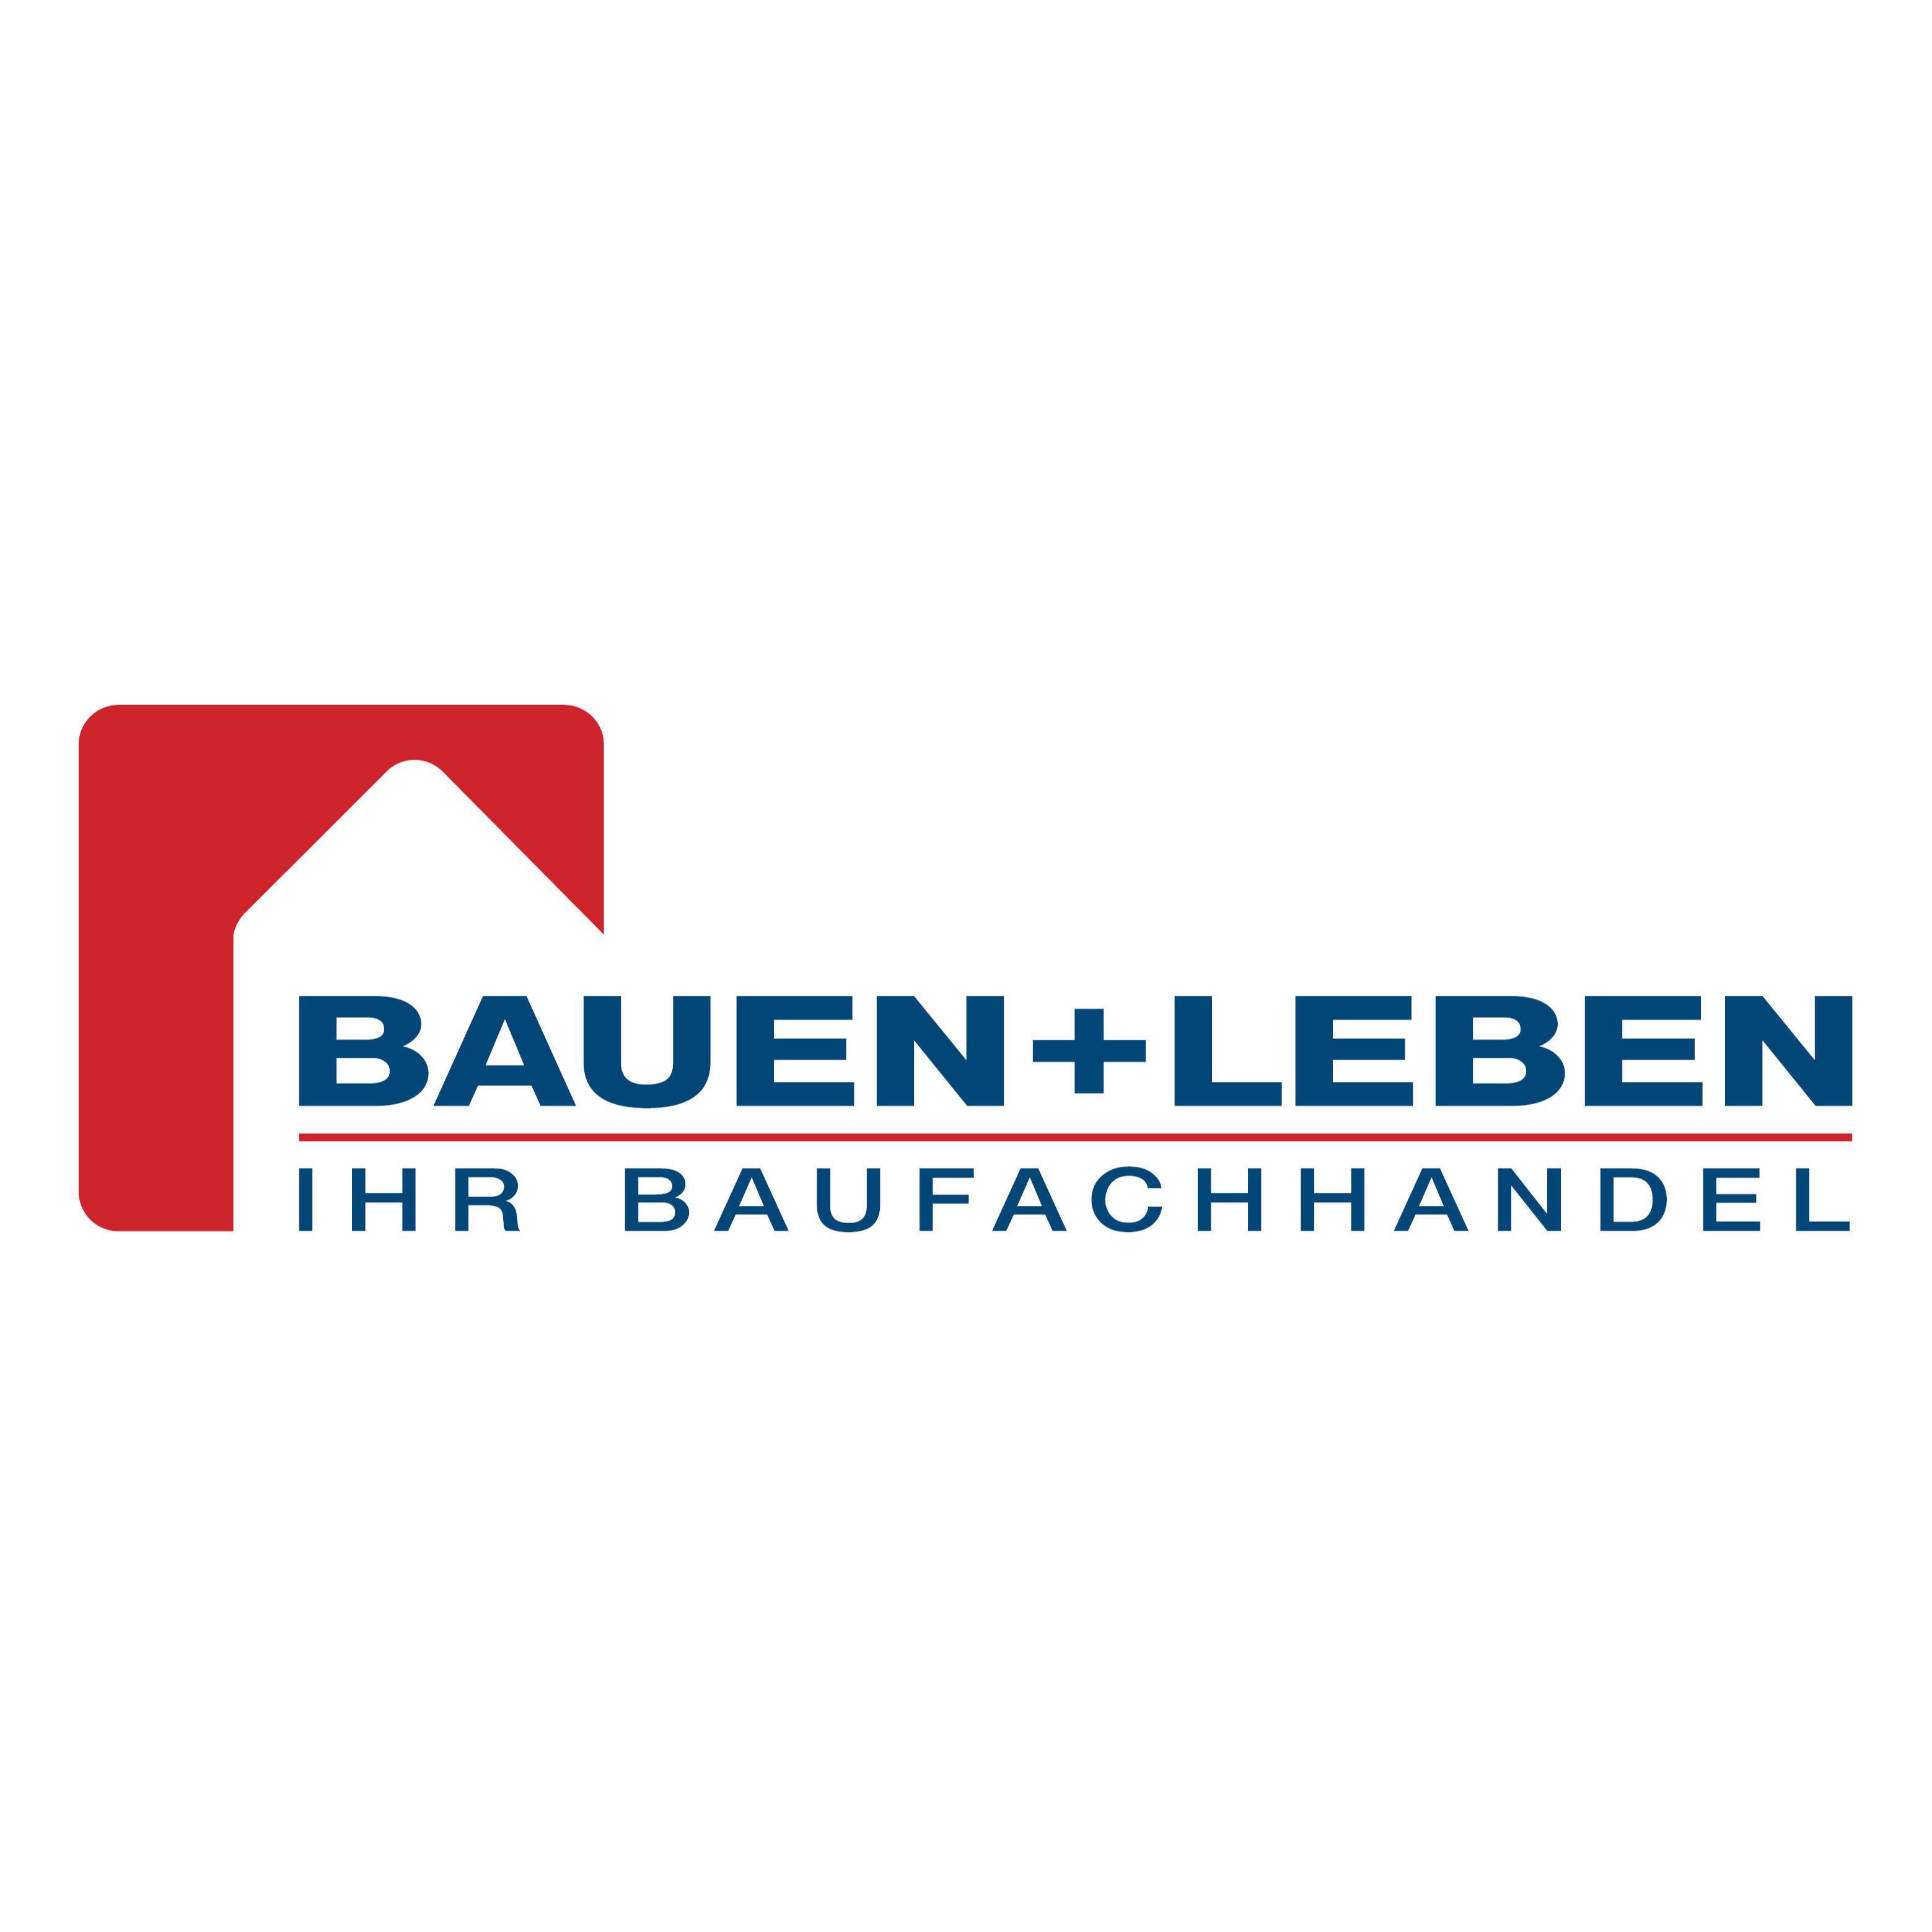 BAUEN+LEBEN - Ihr Baufachhandel | Gerads Baufachzentrum GmbH & Co. KG  